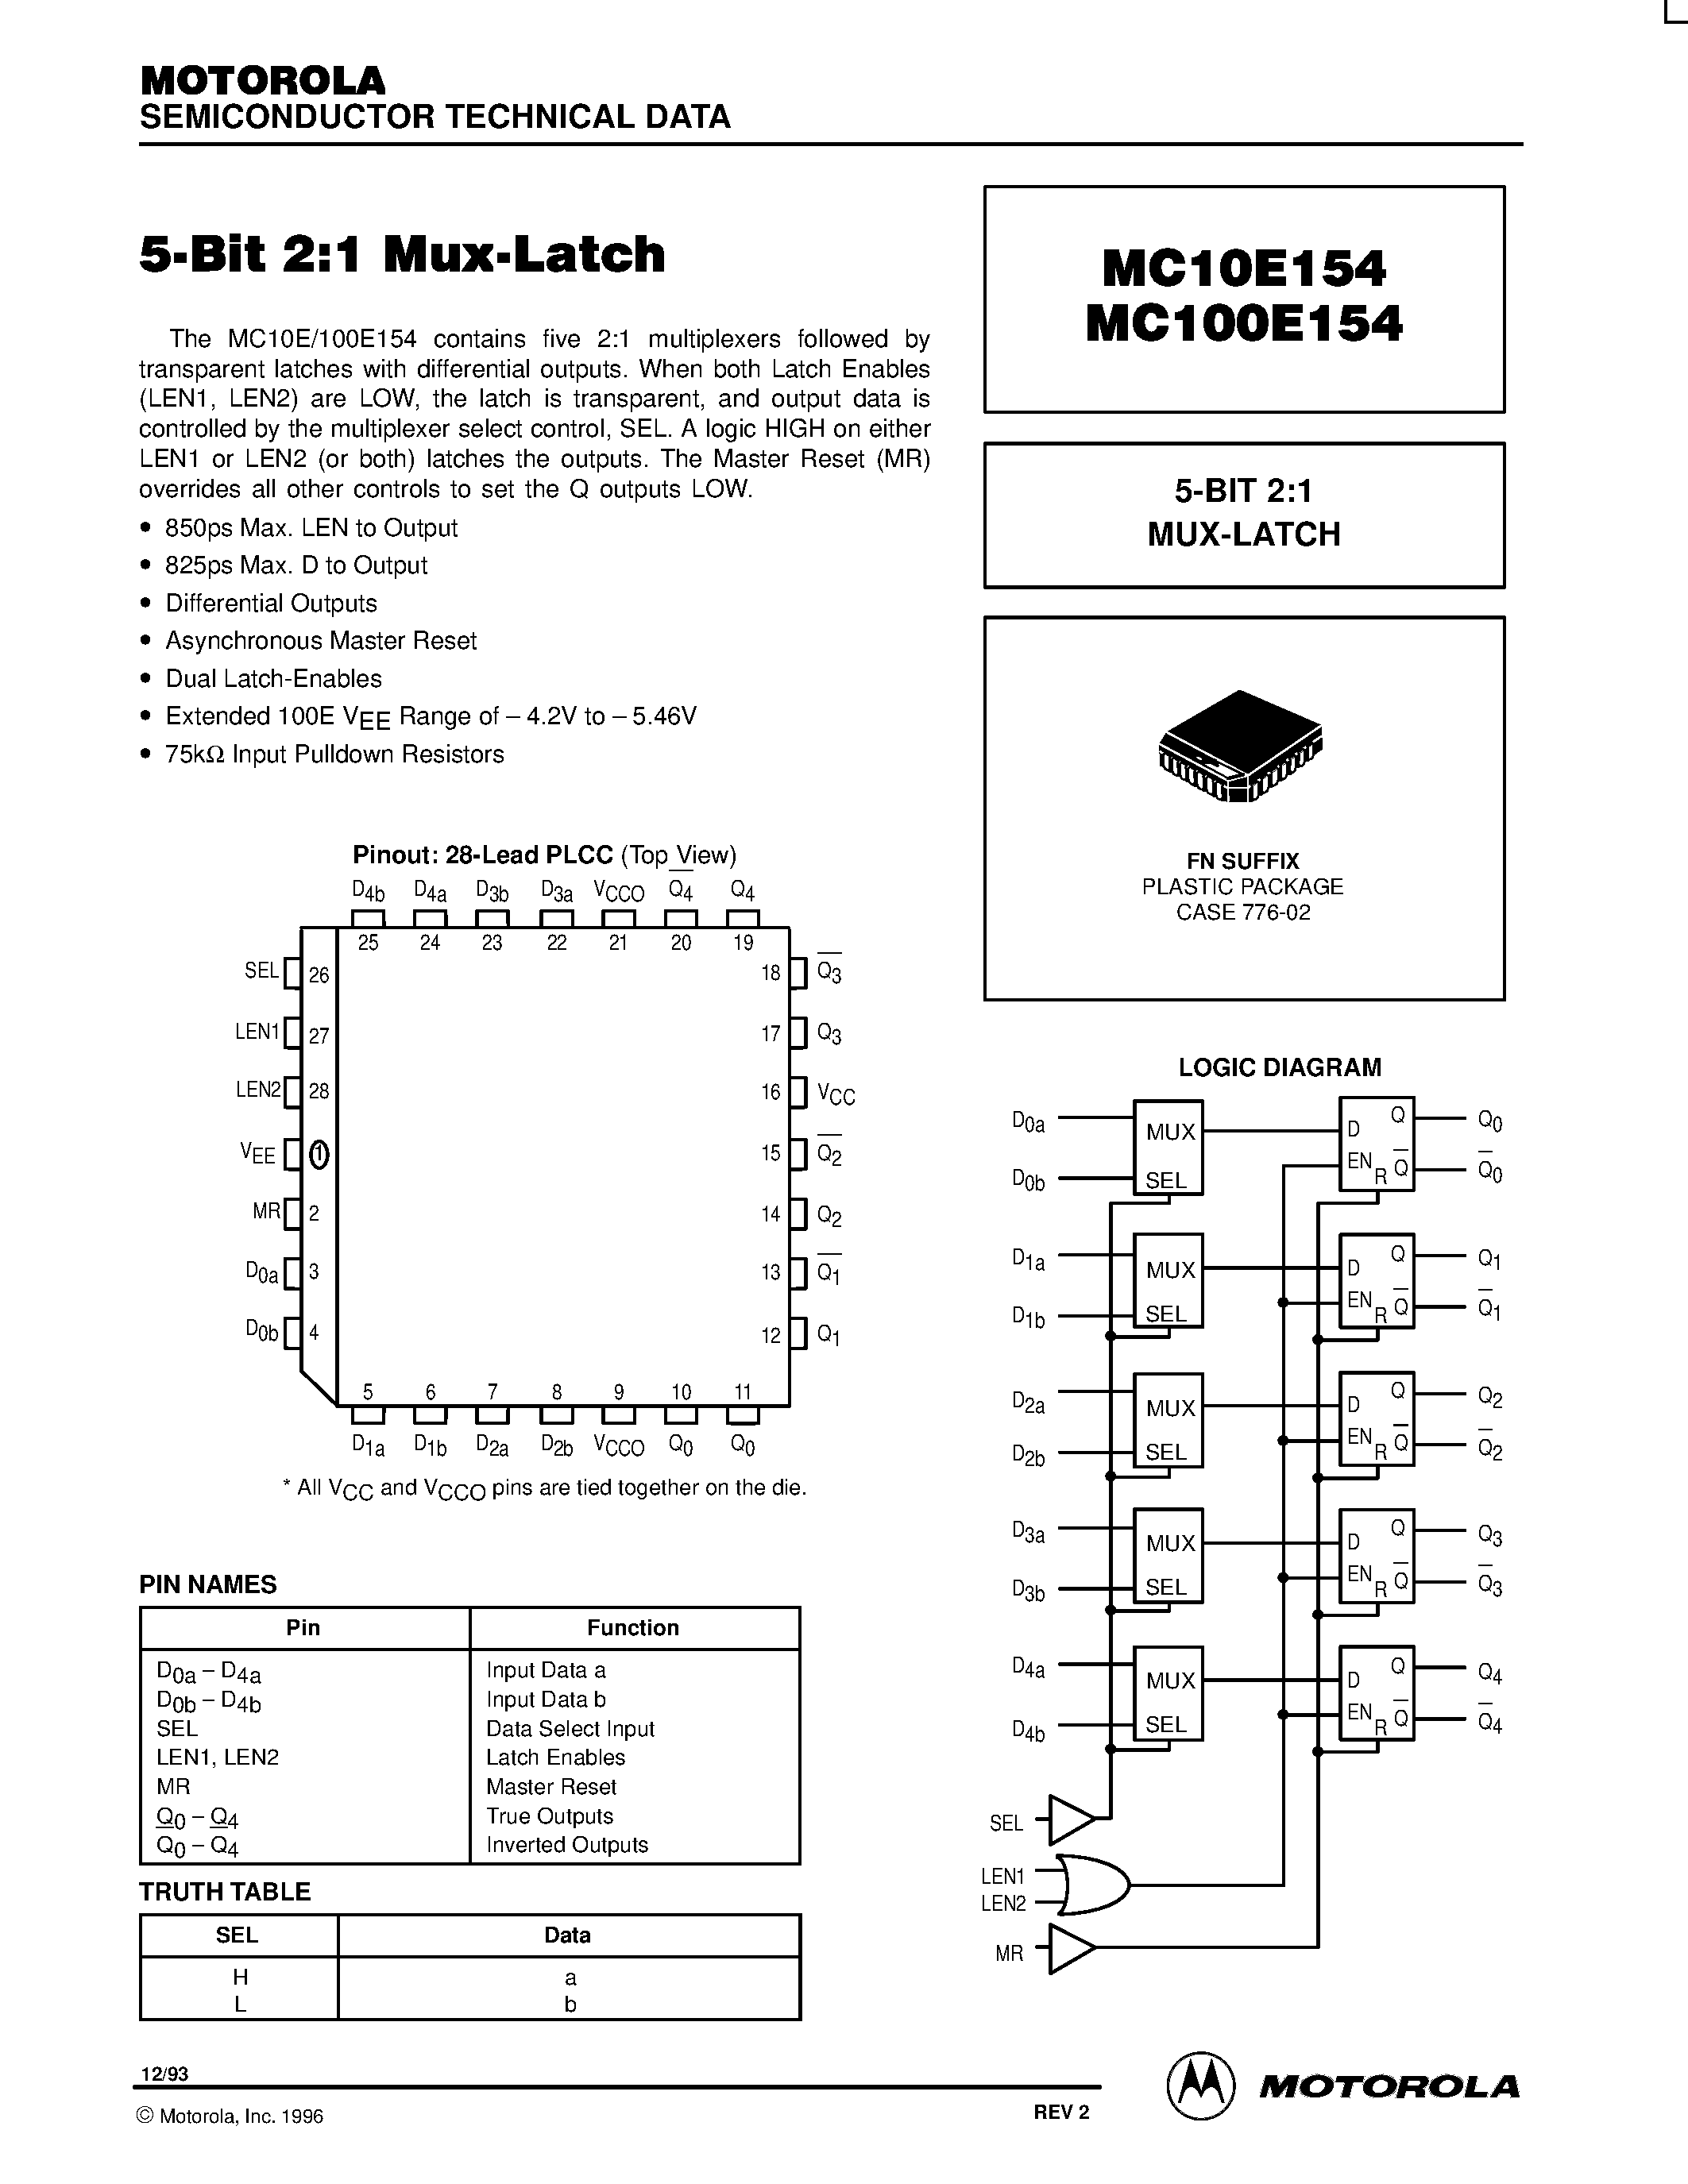 Datasheet MC100E154FN - 5-BIT 2:1 MUX-LATCH page 1